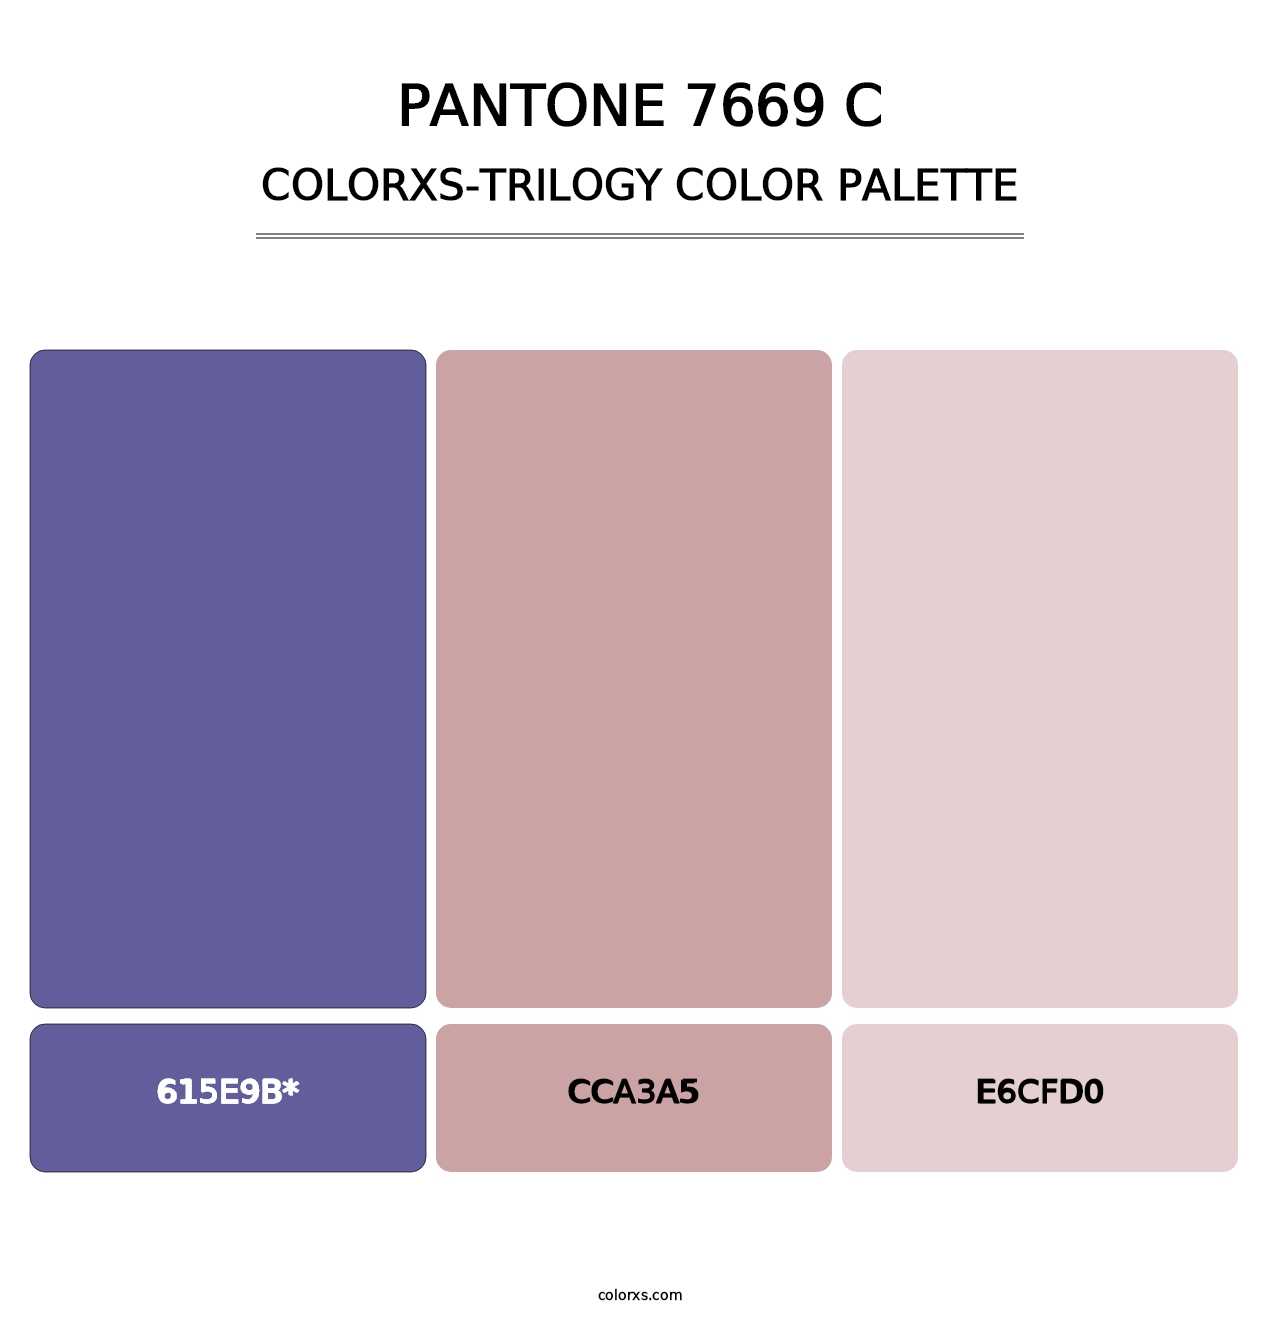 PANTONE 7669 C - Colorxs Trilogy Palette